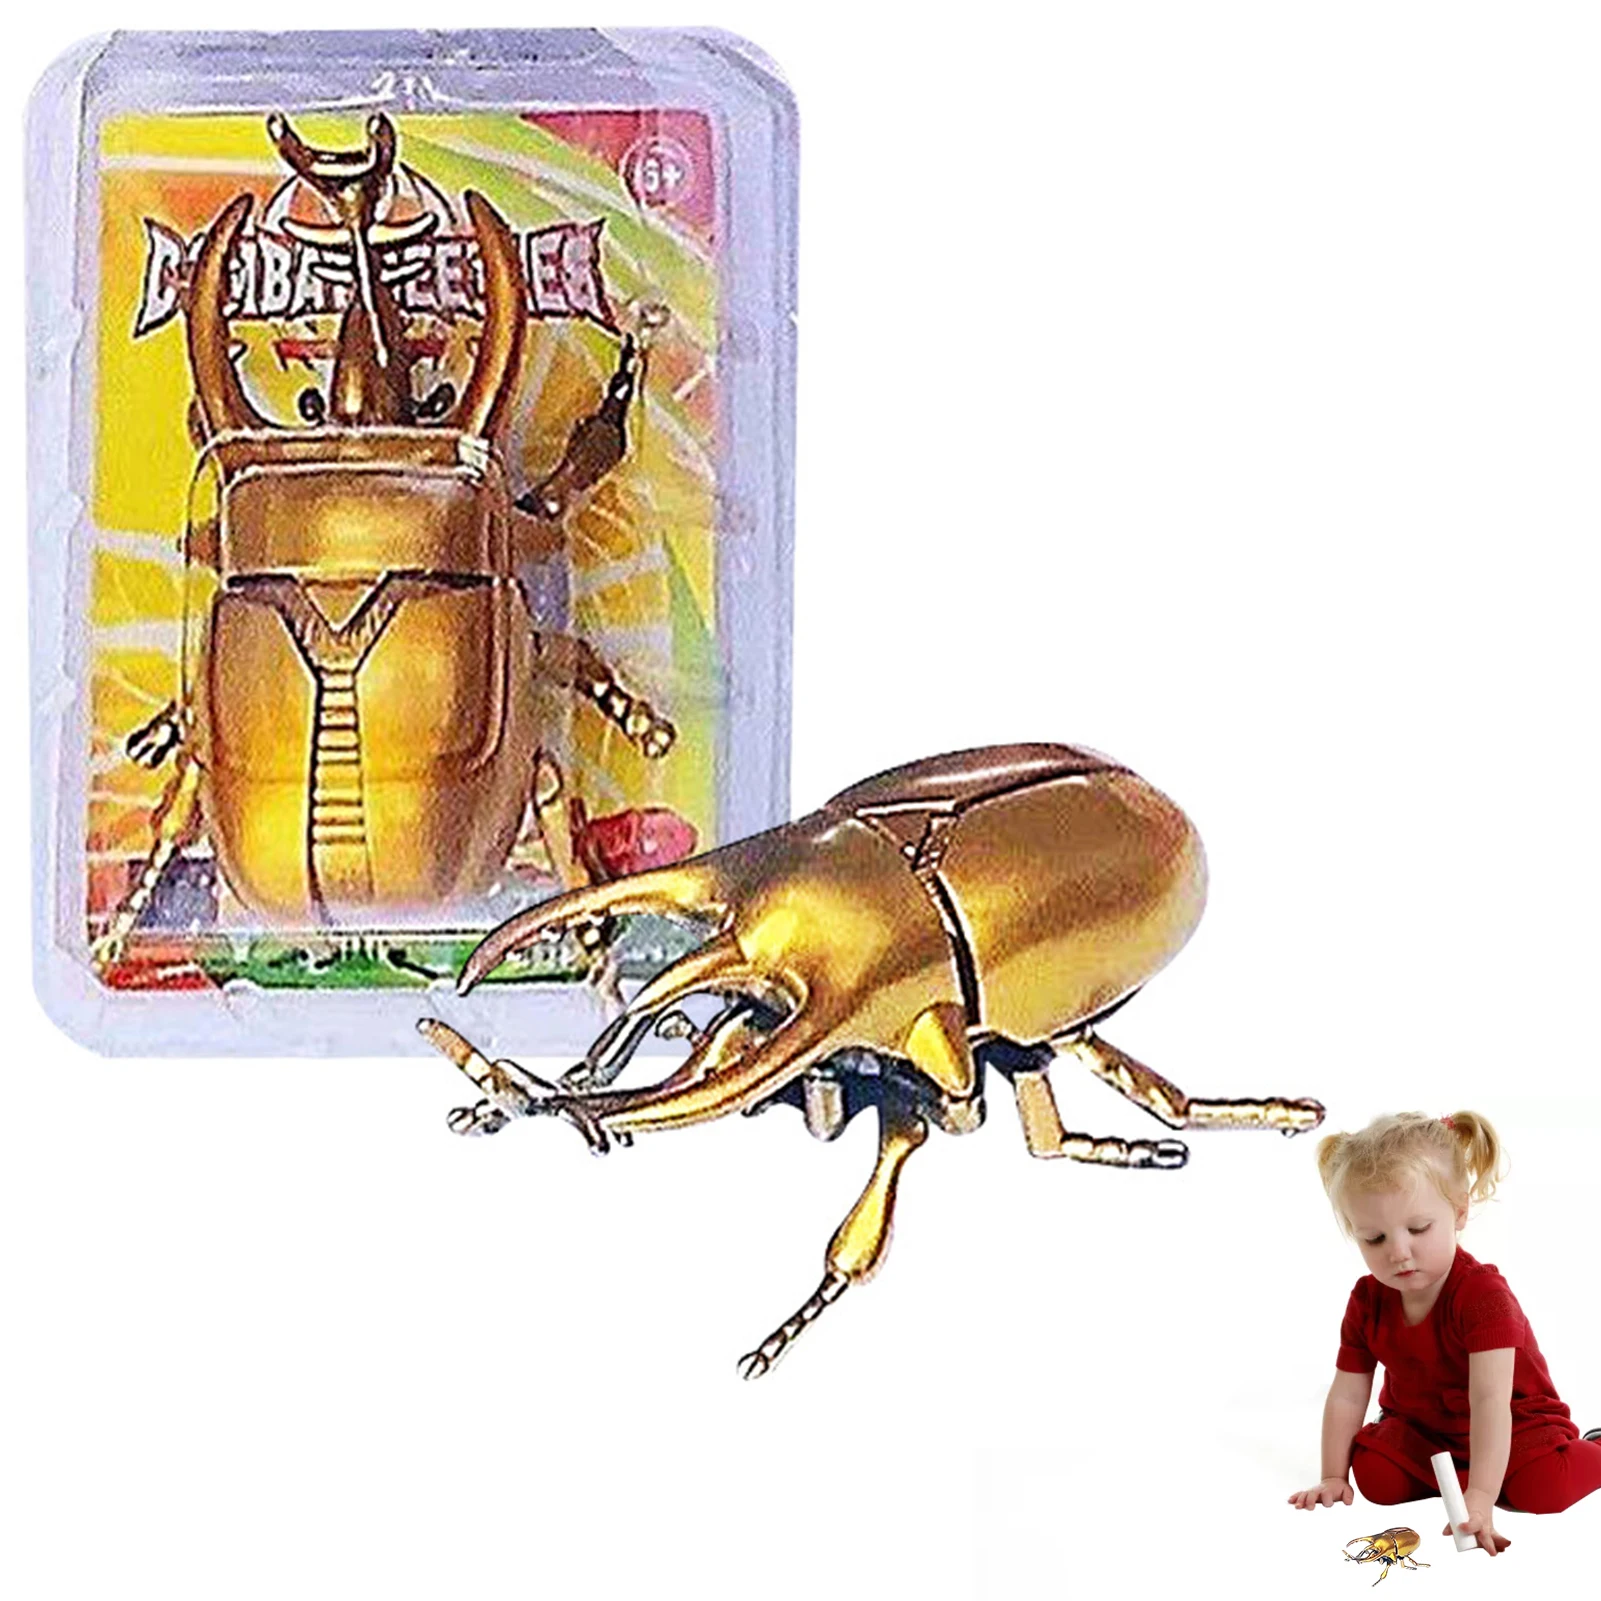 

Заводная игрушка в виде жука, небольшие заводные игрушки, поддельные реалистичные фигурки насекомых, коллекционный игровой набор, научное обучение